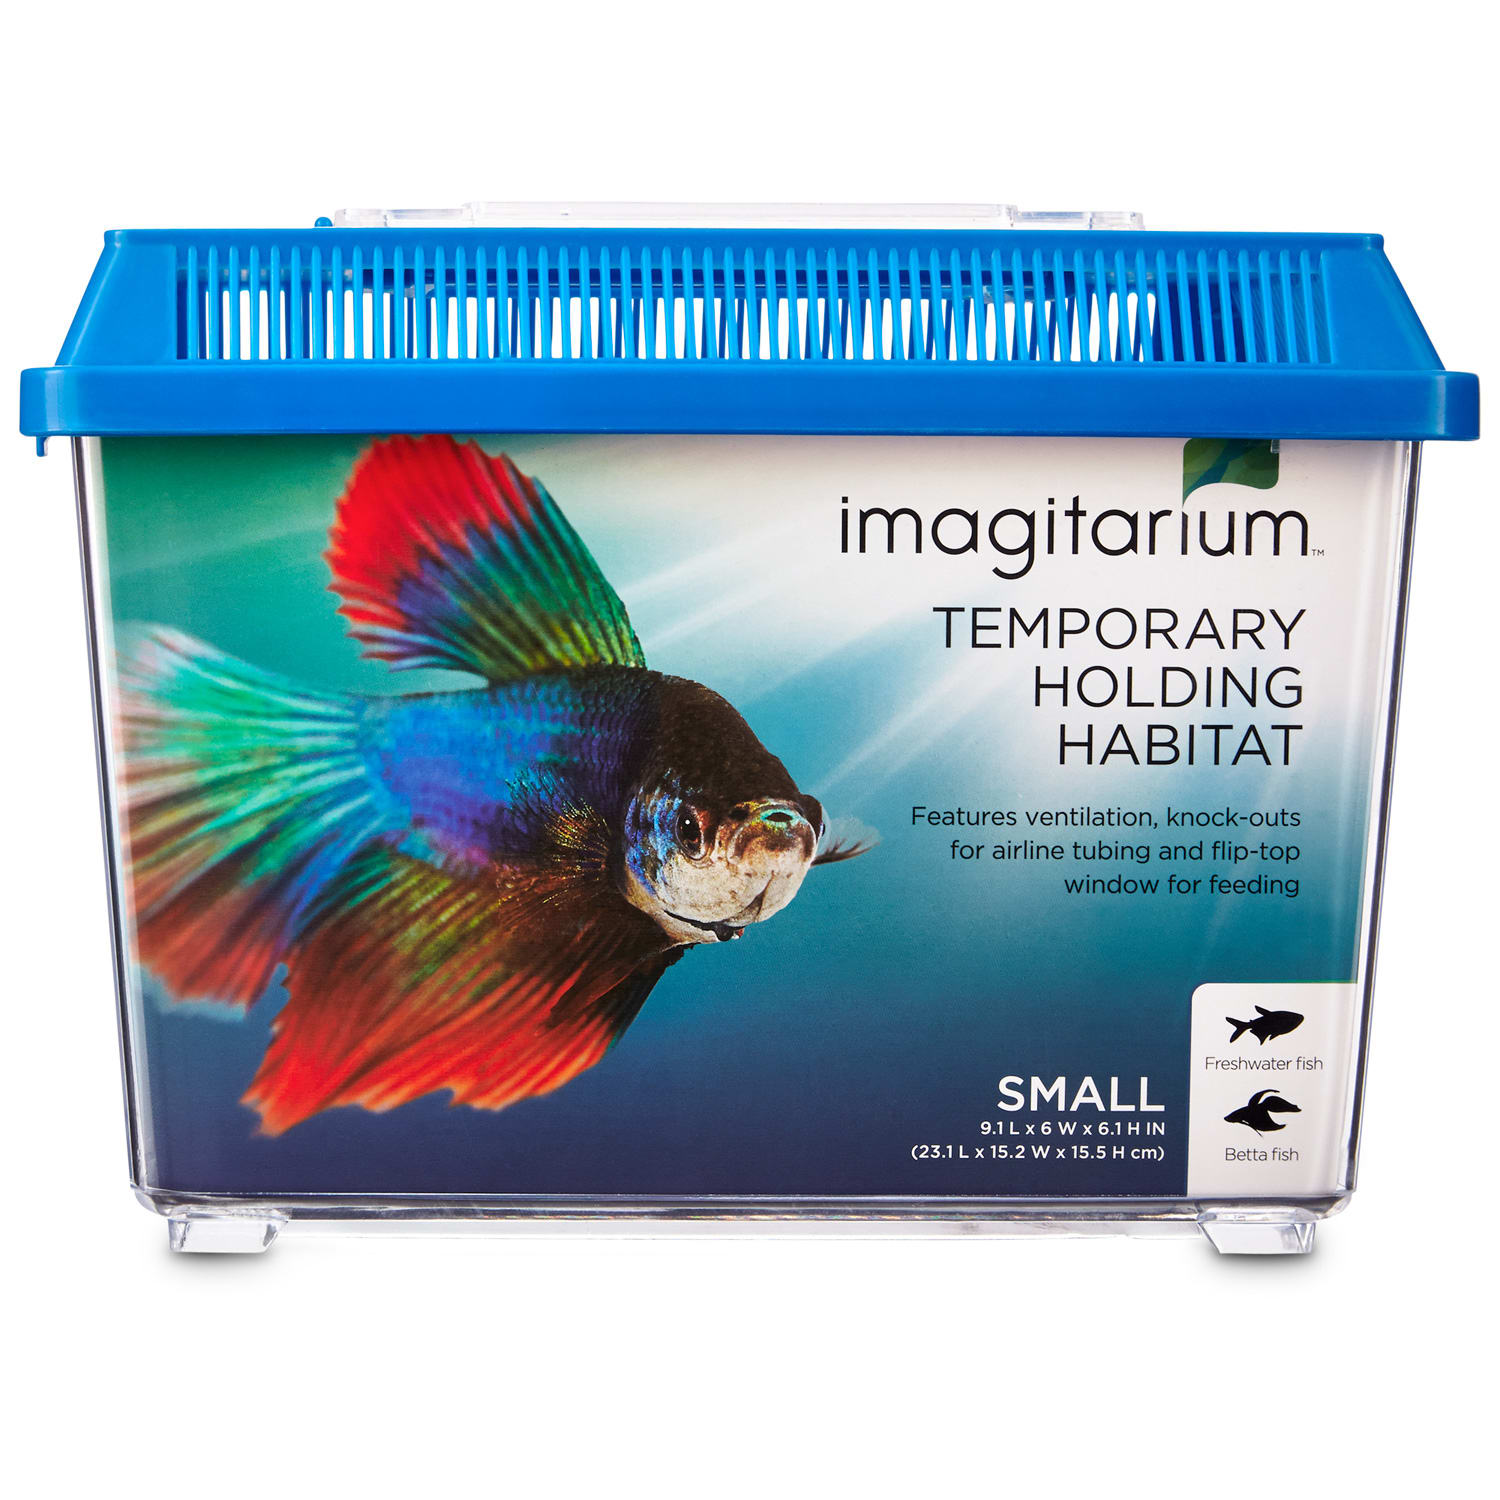 Imagitarium Pet Keeper for Aquarium Fish, Small Petco